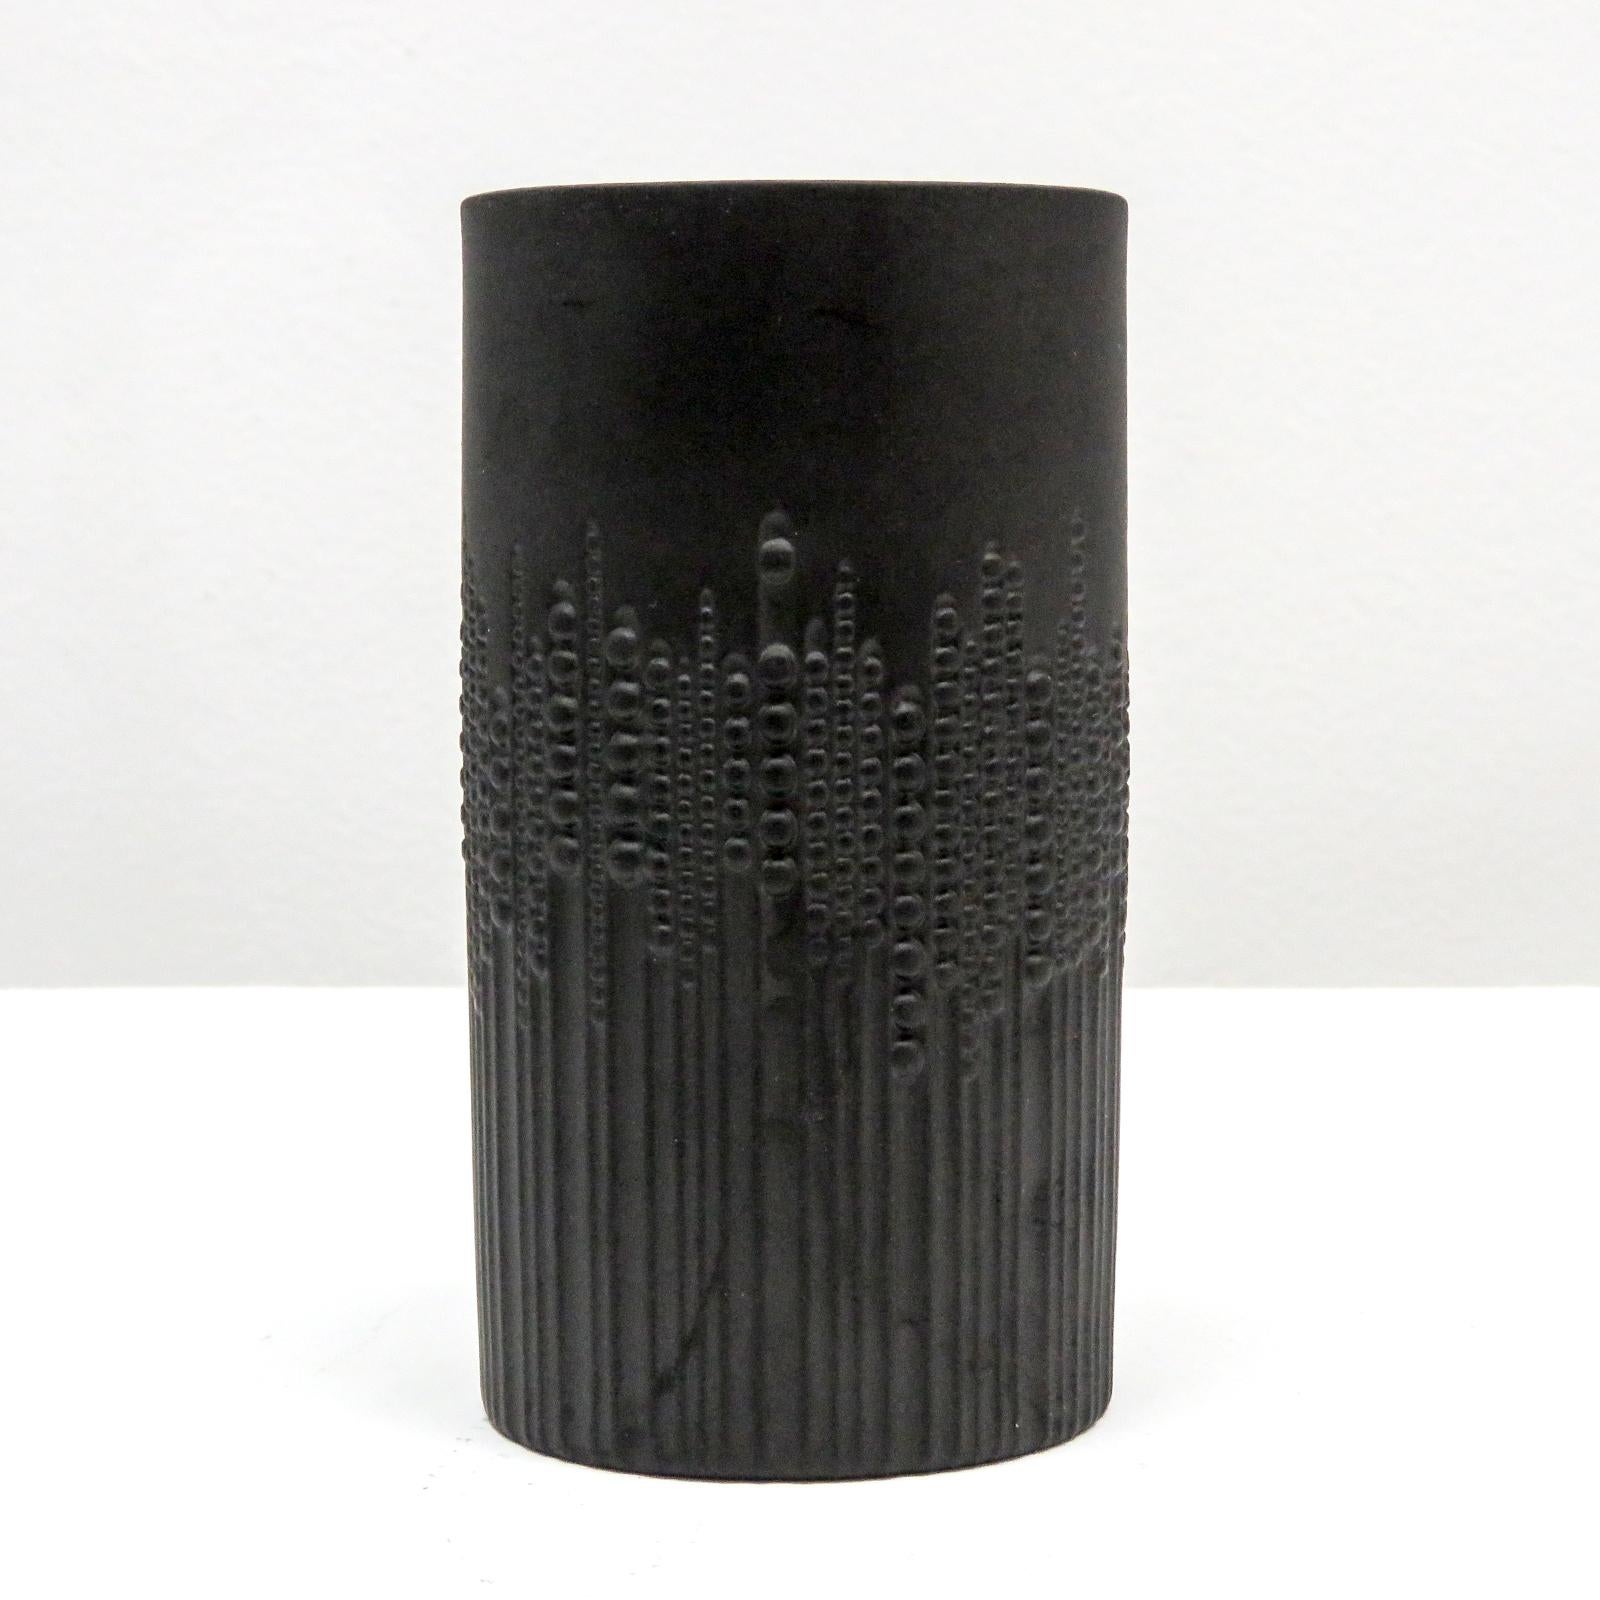 Wunderschöne zylindrische Vase aus schwarzem, mattem Porzellan, entworfen von Tapio Wirkkala für Rosenthal/Siemens, mit einem erhabenen Relief aus Perlen, die in vertikalen Linien verlaufen und den Eindruck von Bewegung vermitteln, gekennzeichnet.